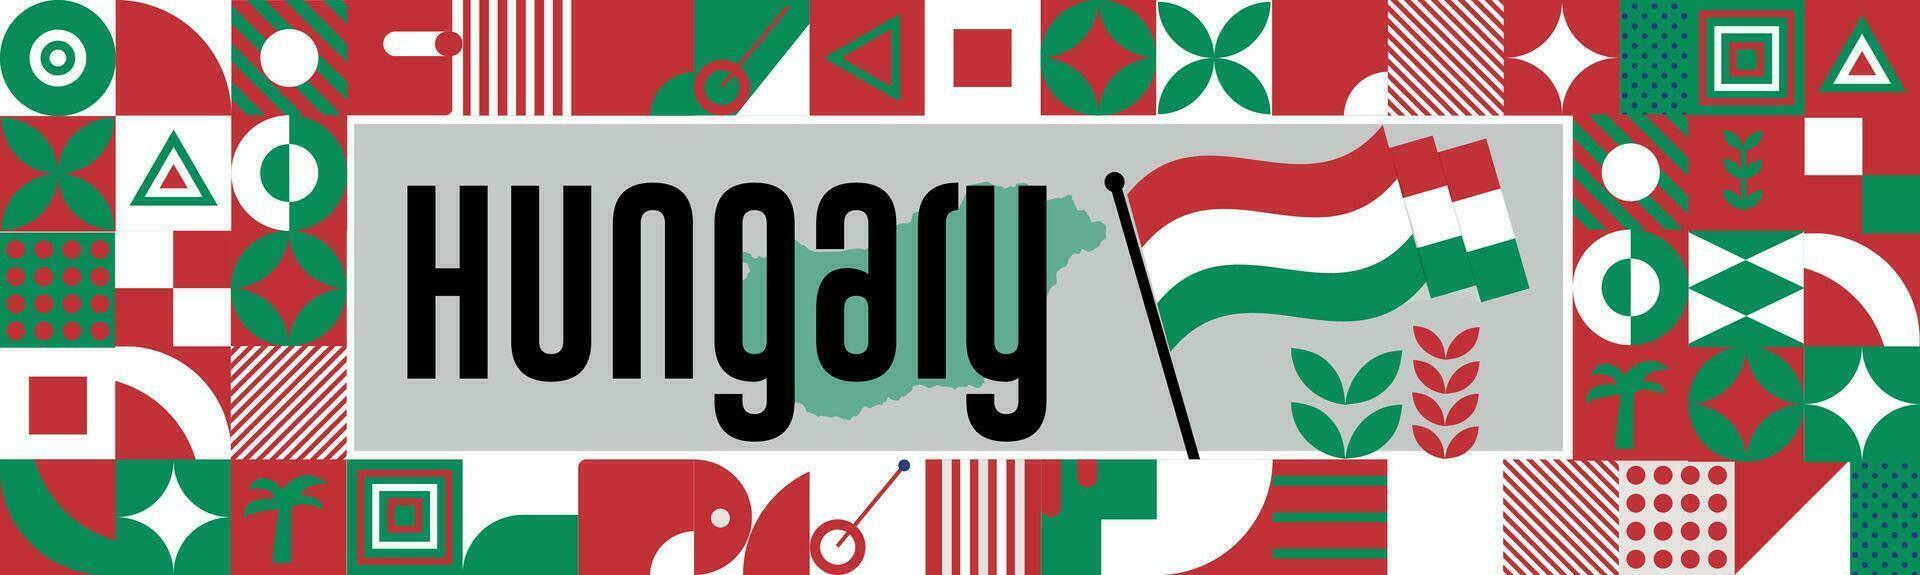 Ungarn National Tag Banner mit Karte, Flagge Farben Thema Hintergrund und geometrisch abstrakt retro modern bunt Design mit angehoben Hände oder Fäuste. vektor